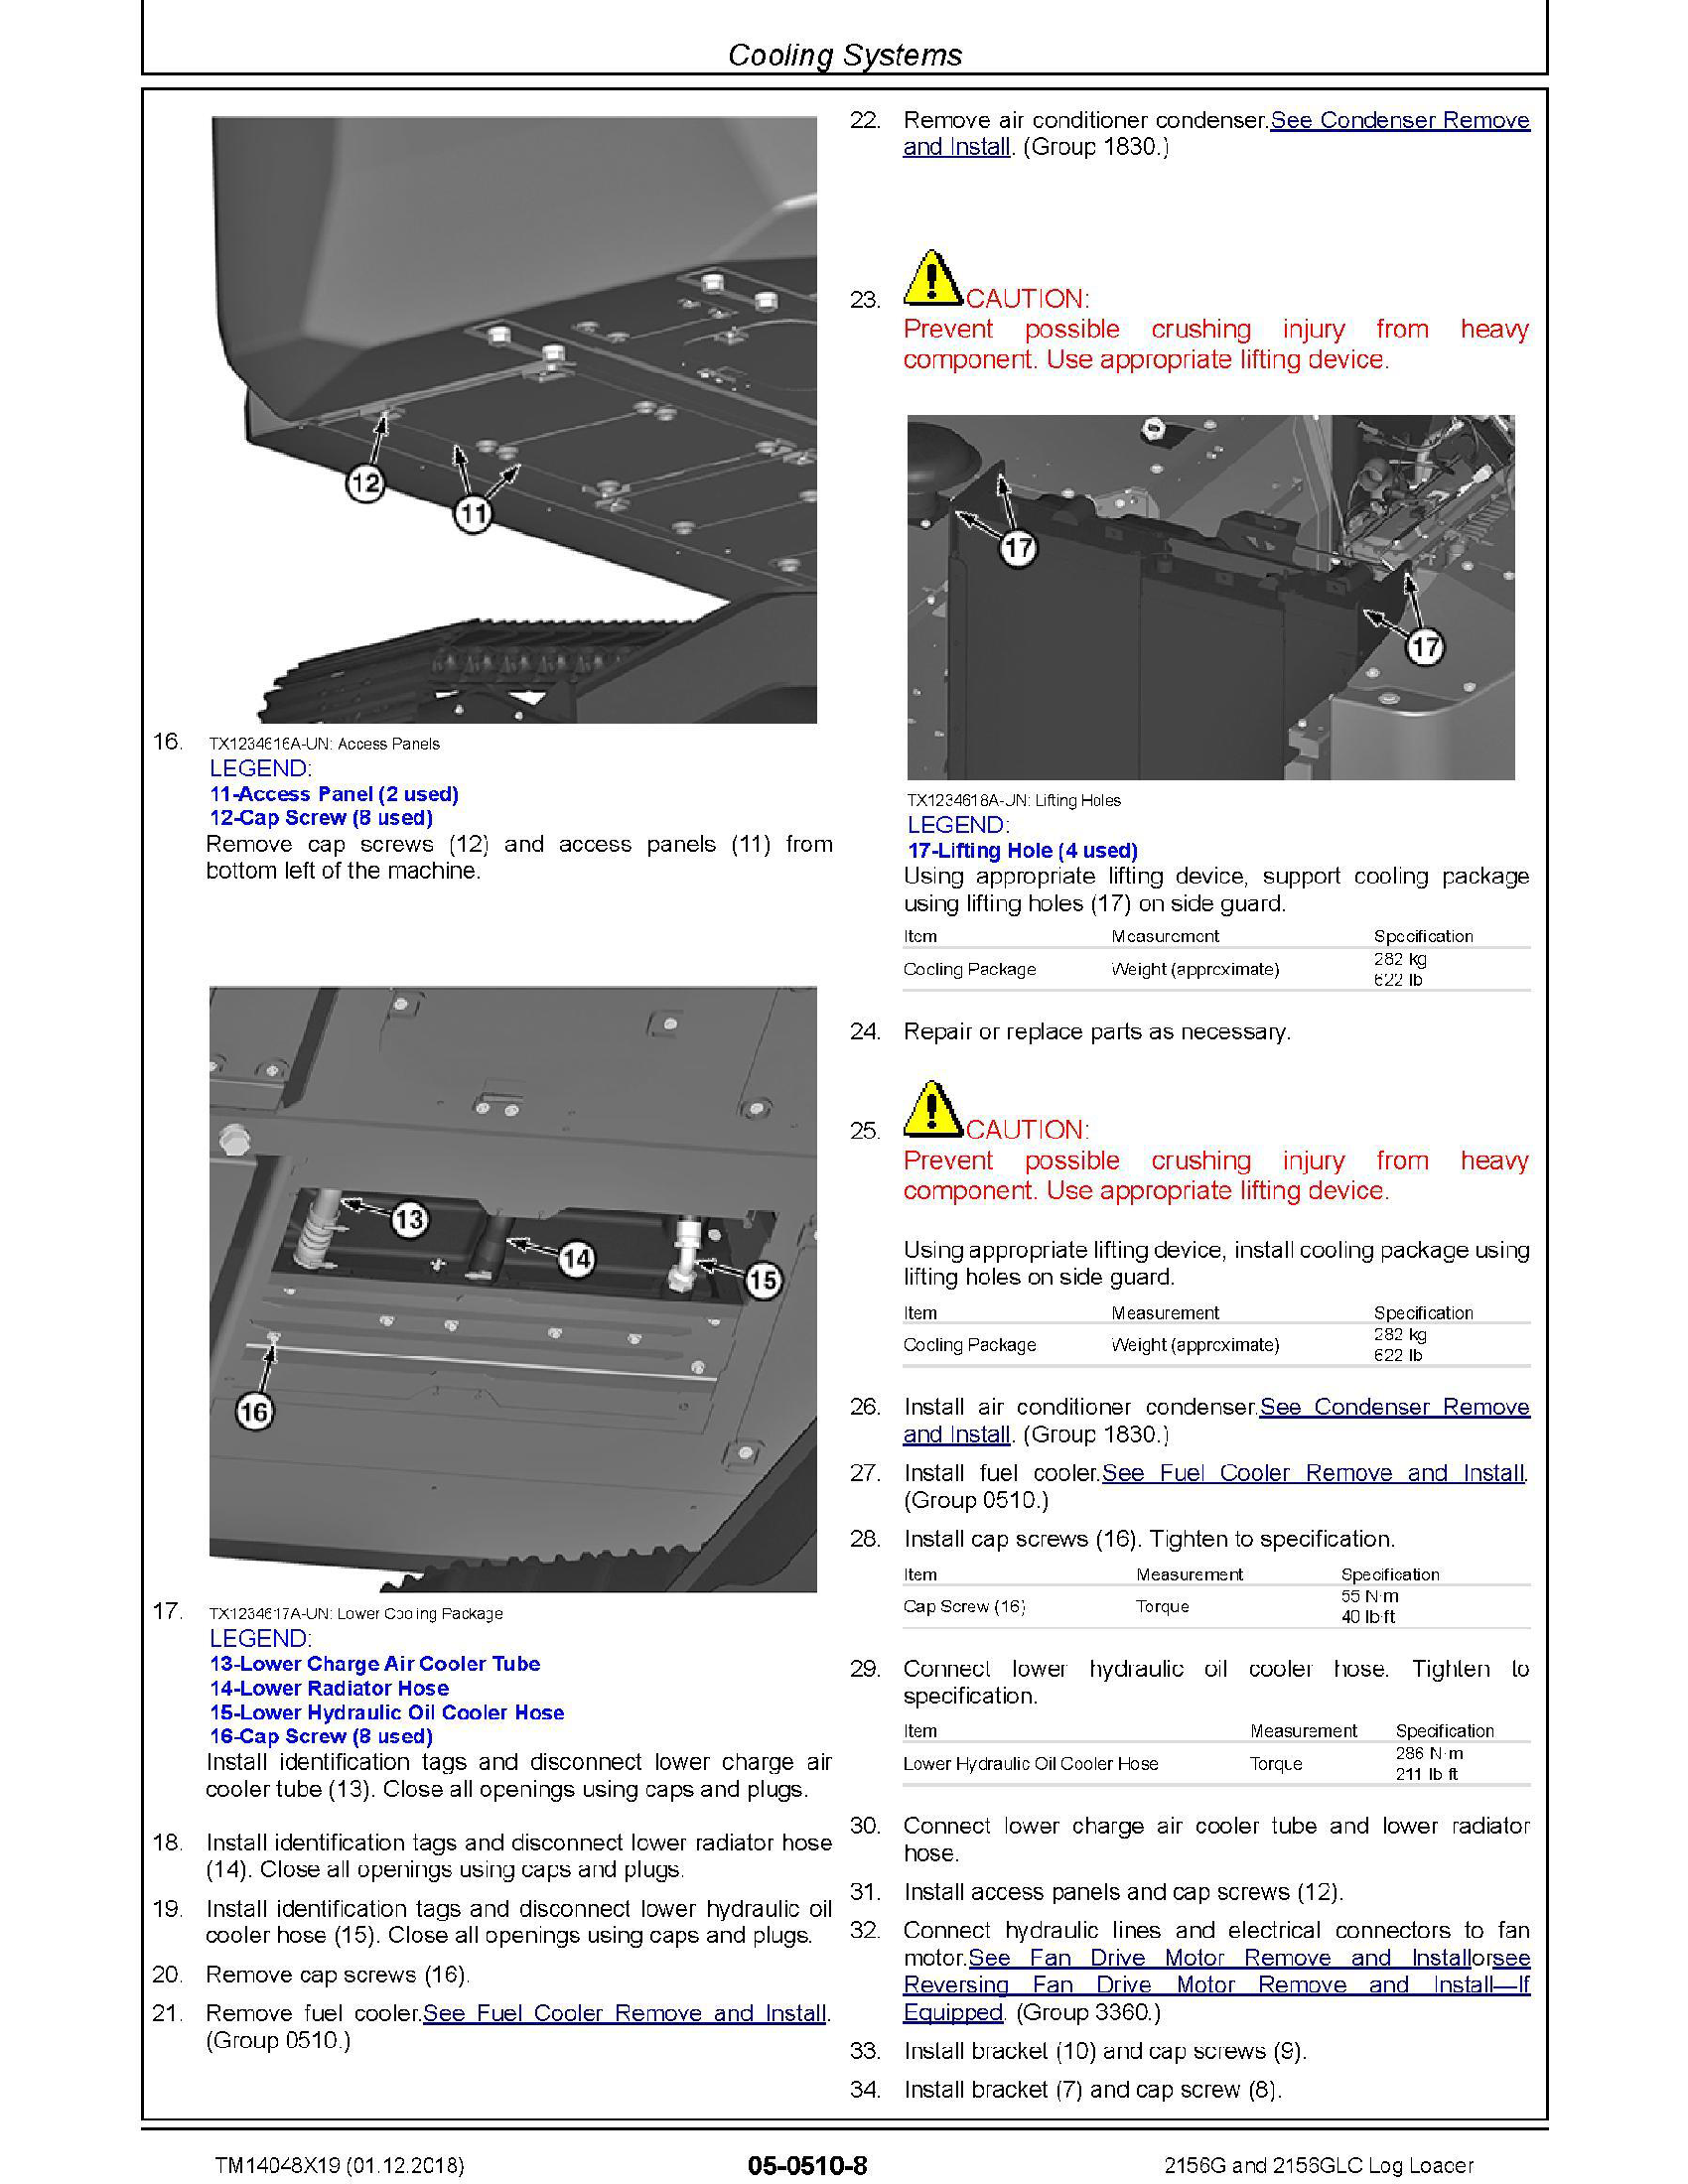 John Deere 909MH manual pdf